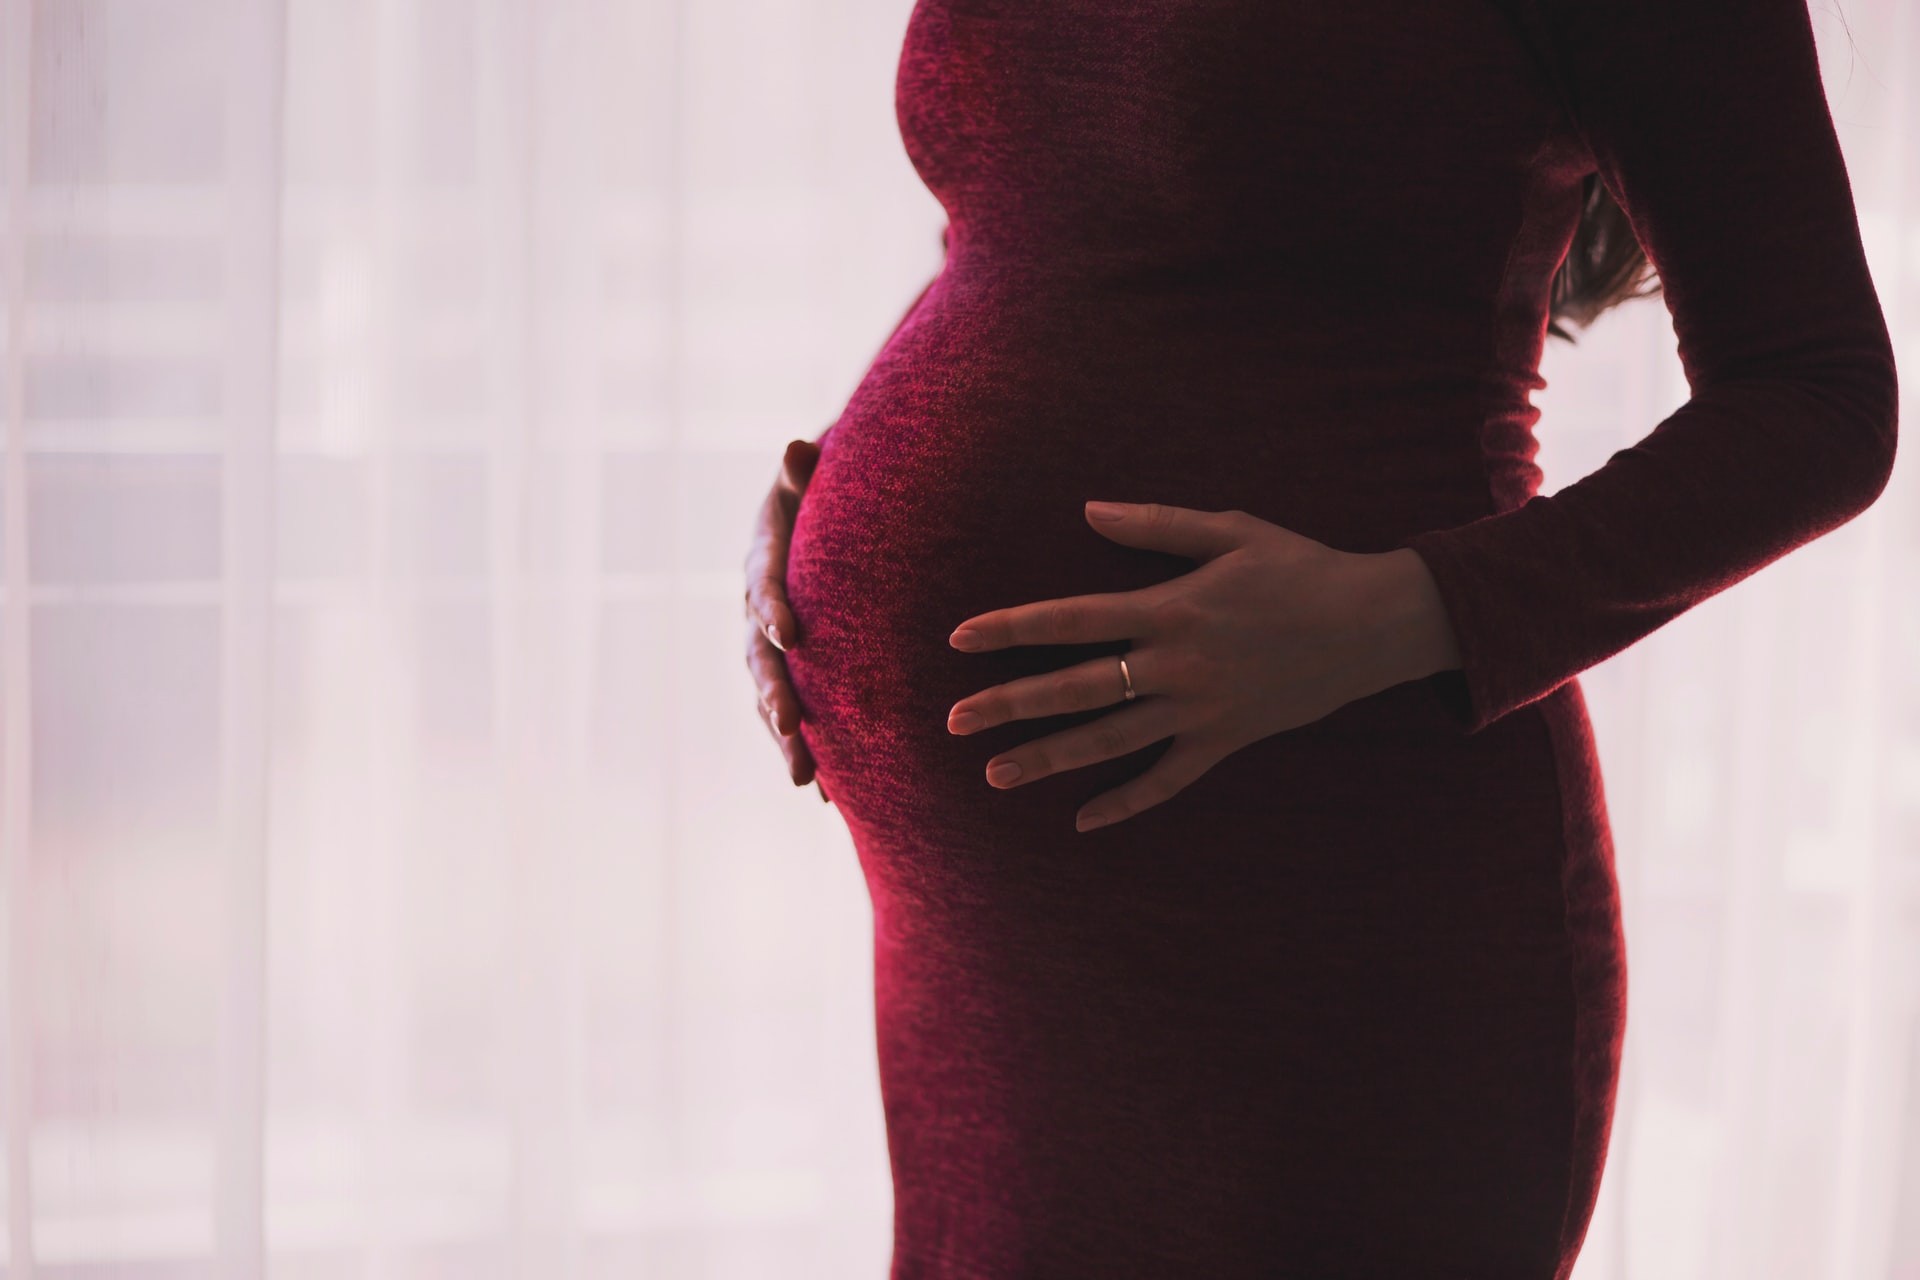 Estudo investiga como corpo humano evoluiu para facilitar (ou não) o parto (Foto: freestocks/Unsplash)